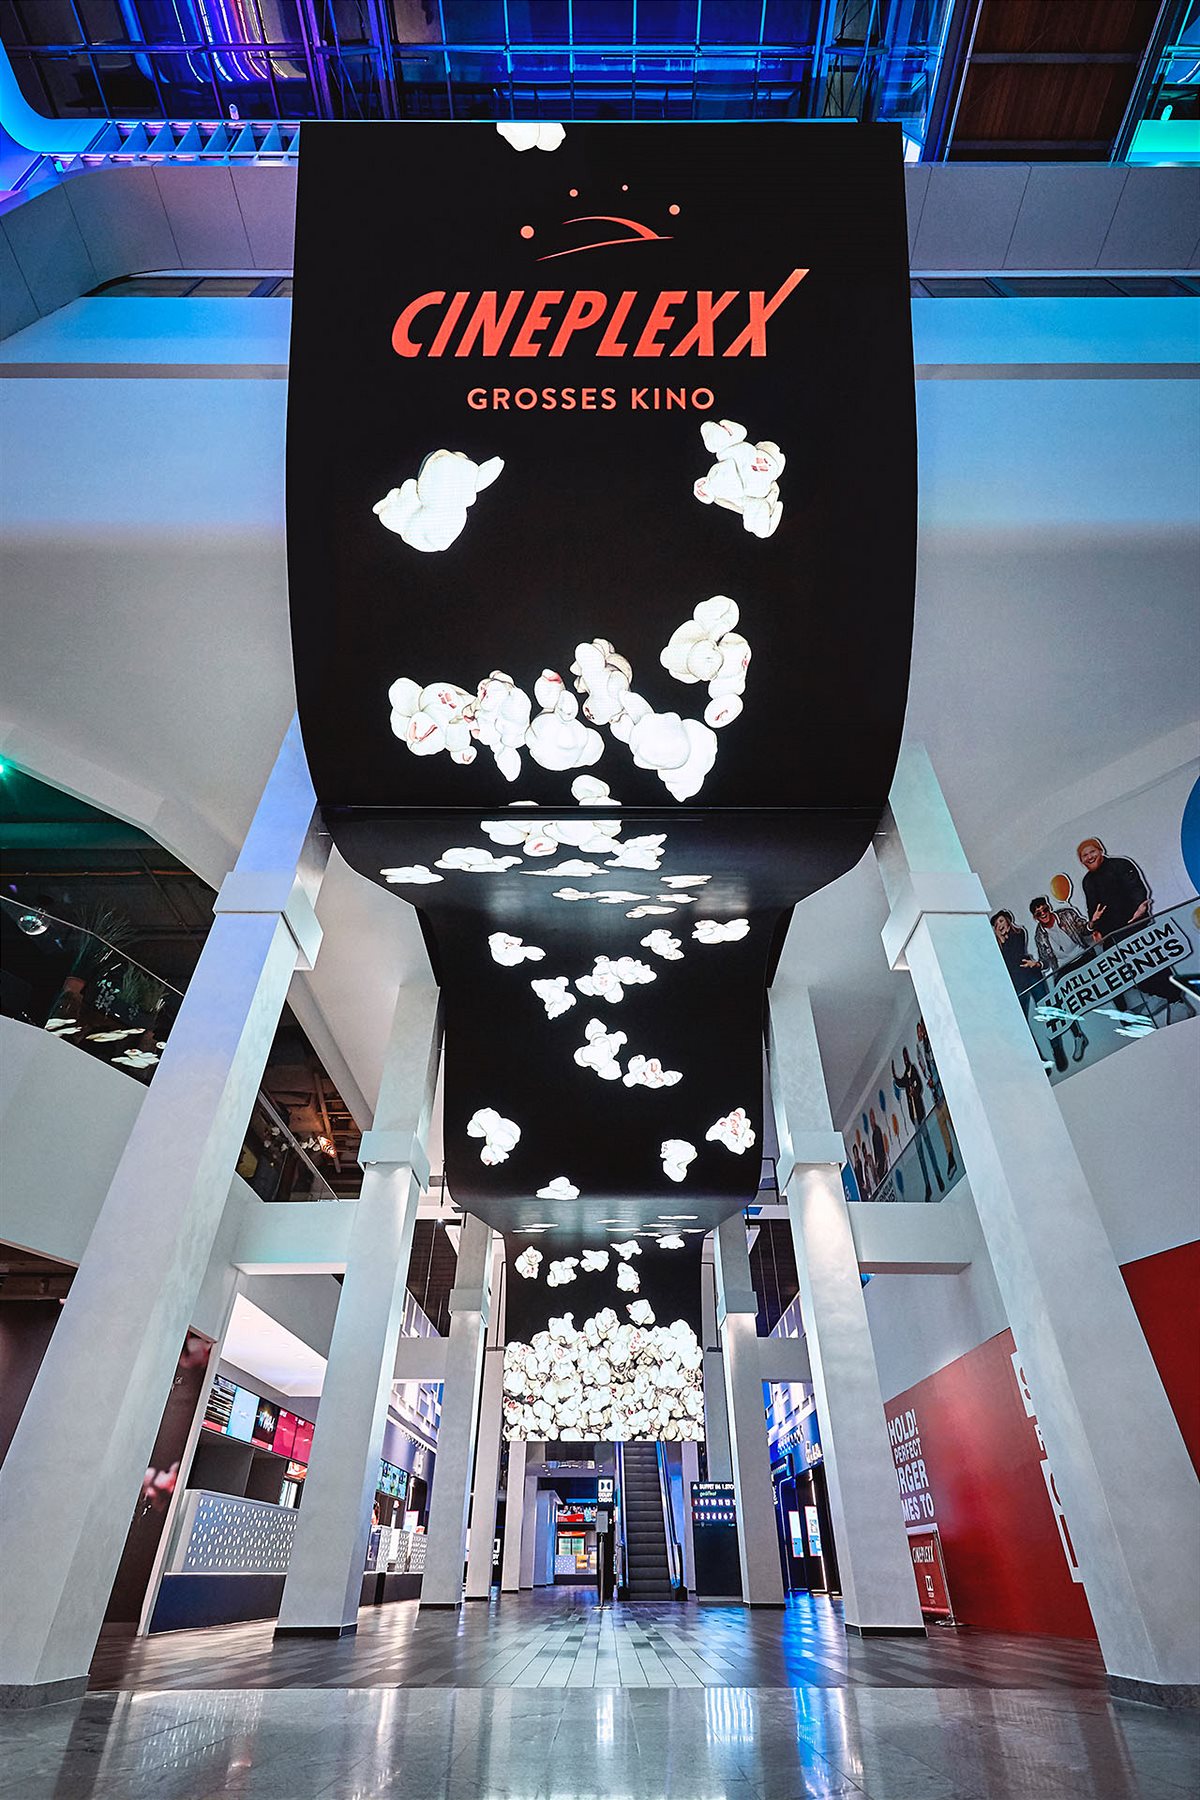 Cineplexx_PA_Wiedereröffnung aller Standorte_Presse1